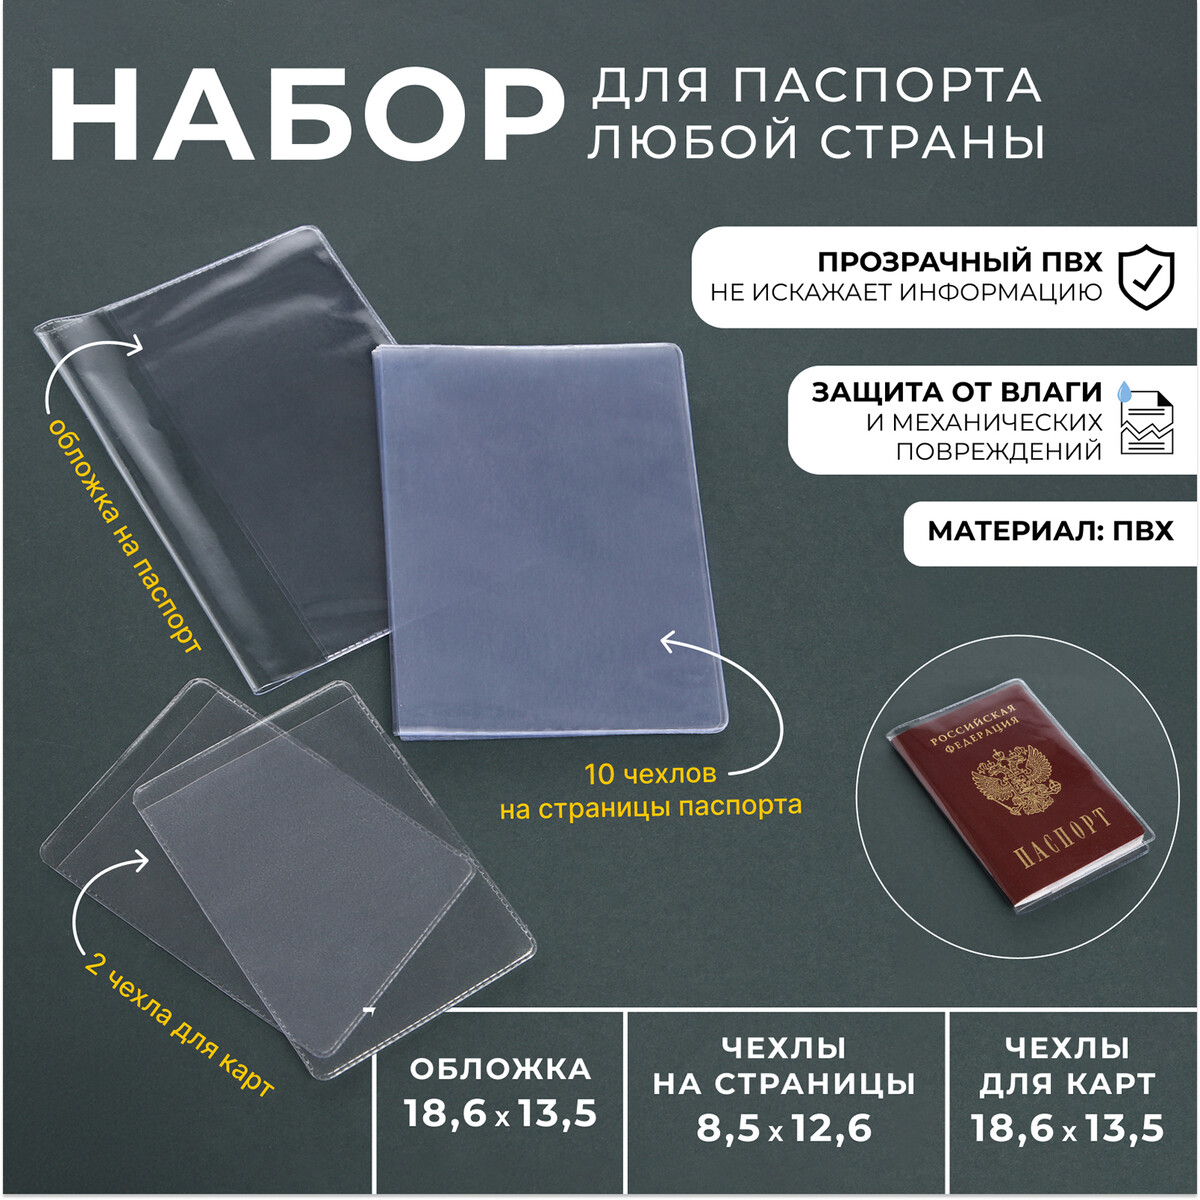 Набор для паспорта: обложка на паспорт; 10 чехлов на страницы паспорта, 2 чехла для карт, цвет прозрачный набор чехлов прогулочного блока для коляски priam iv fe rockstar cybex